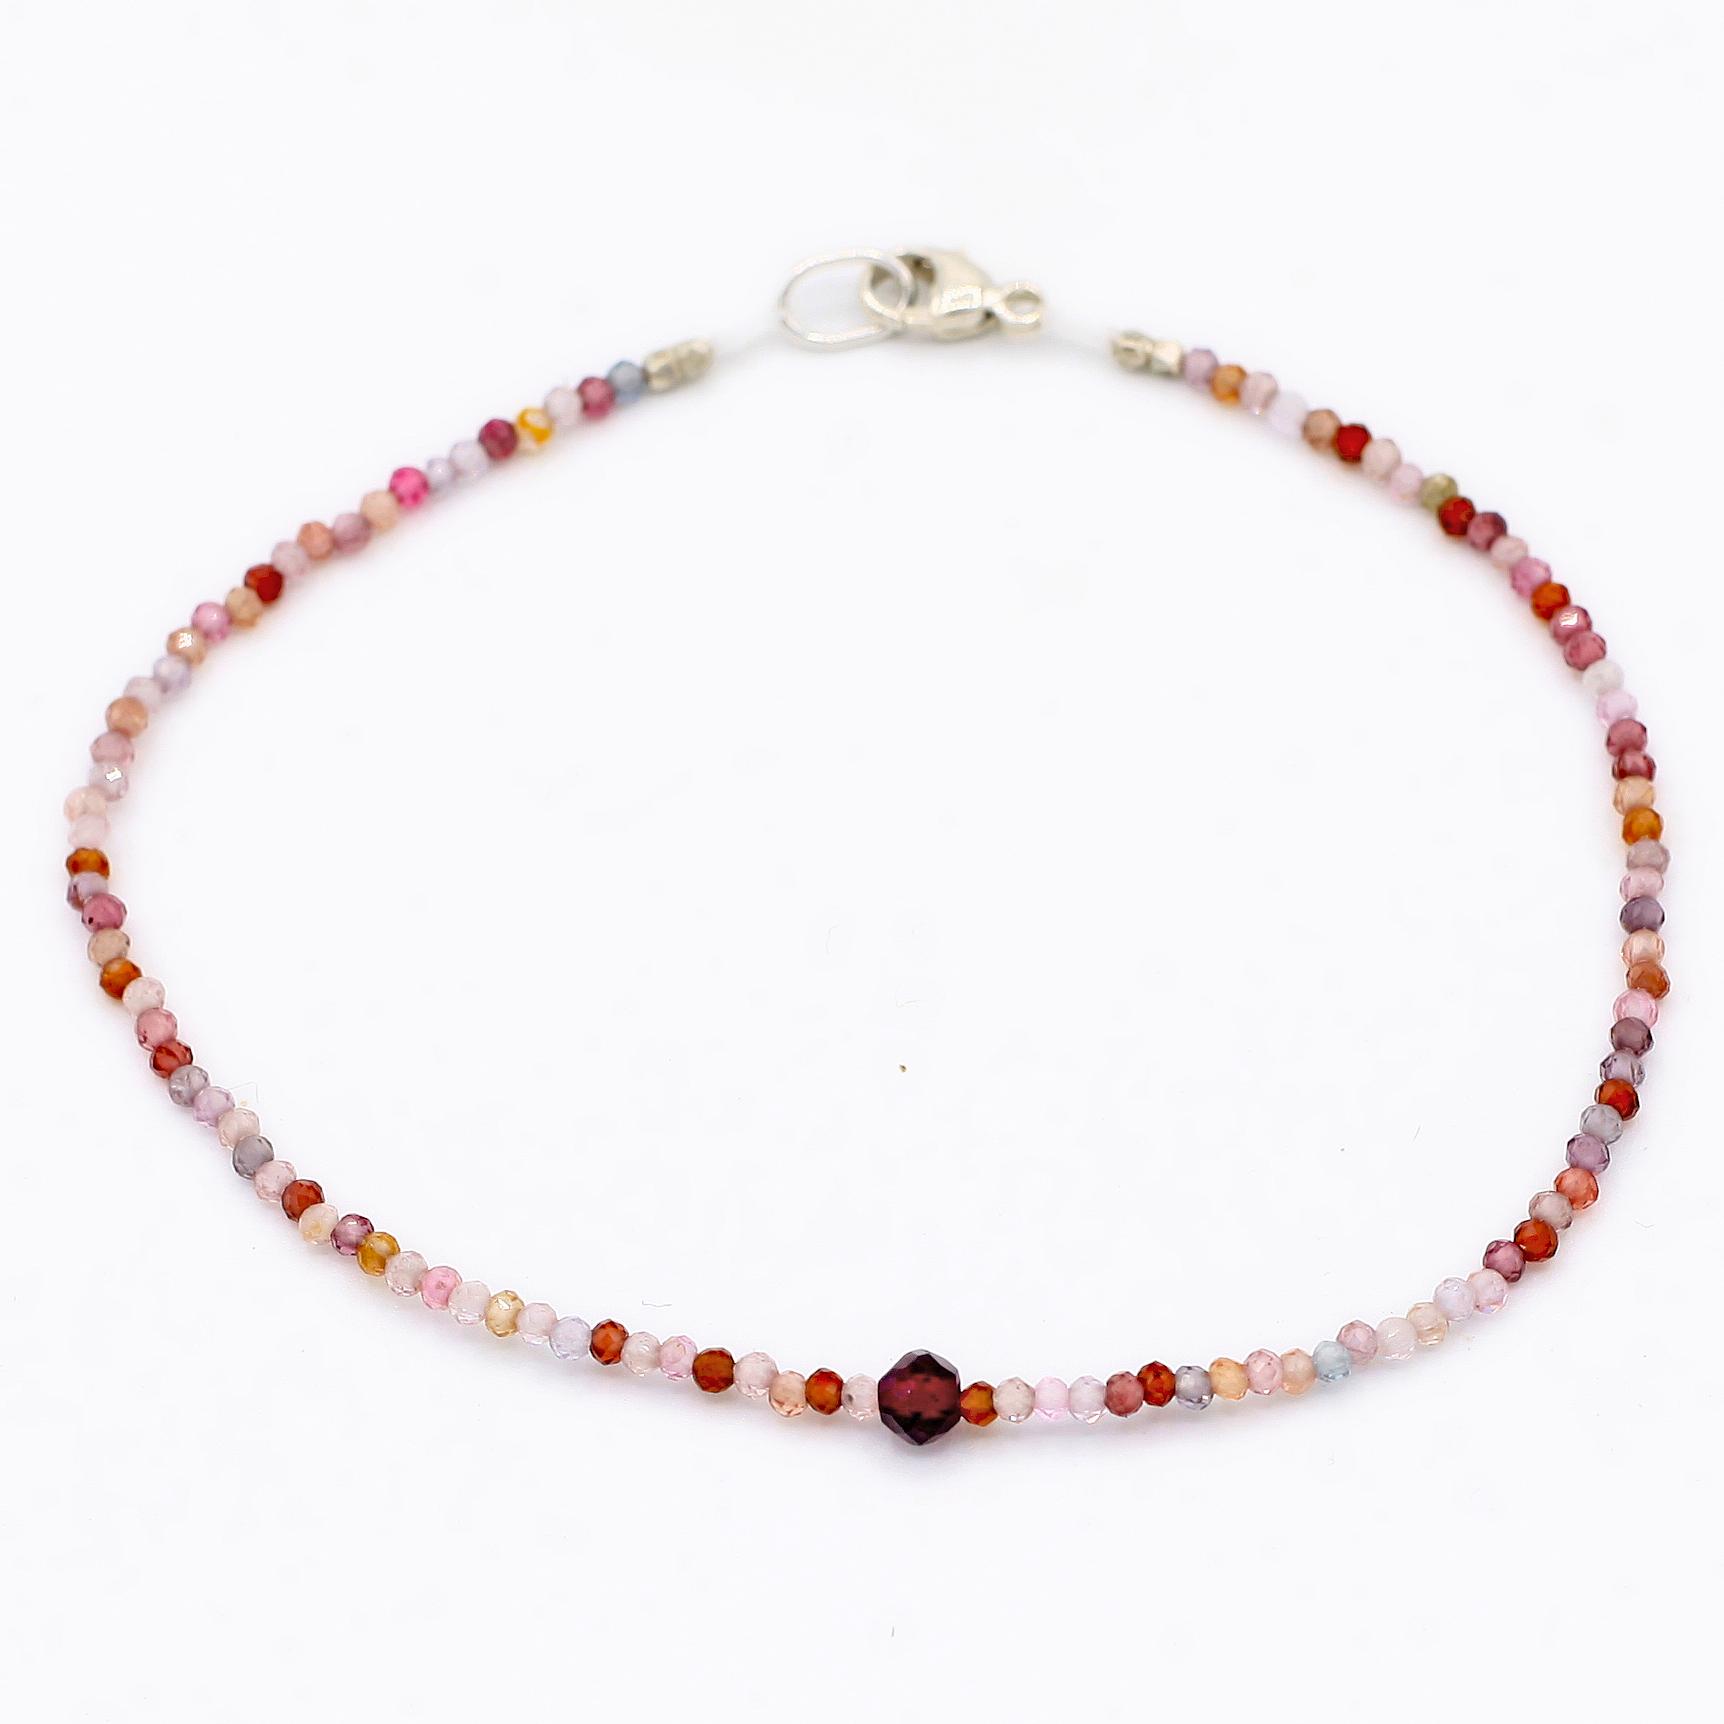 Margaret Solow Jewelry | Red Spinel + Garnet Beaded Bracelet | Firecracker